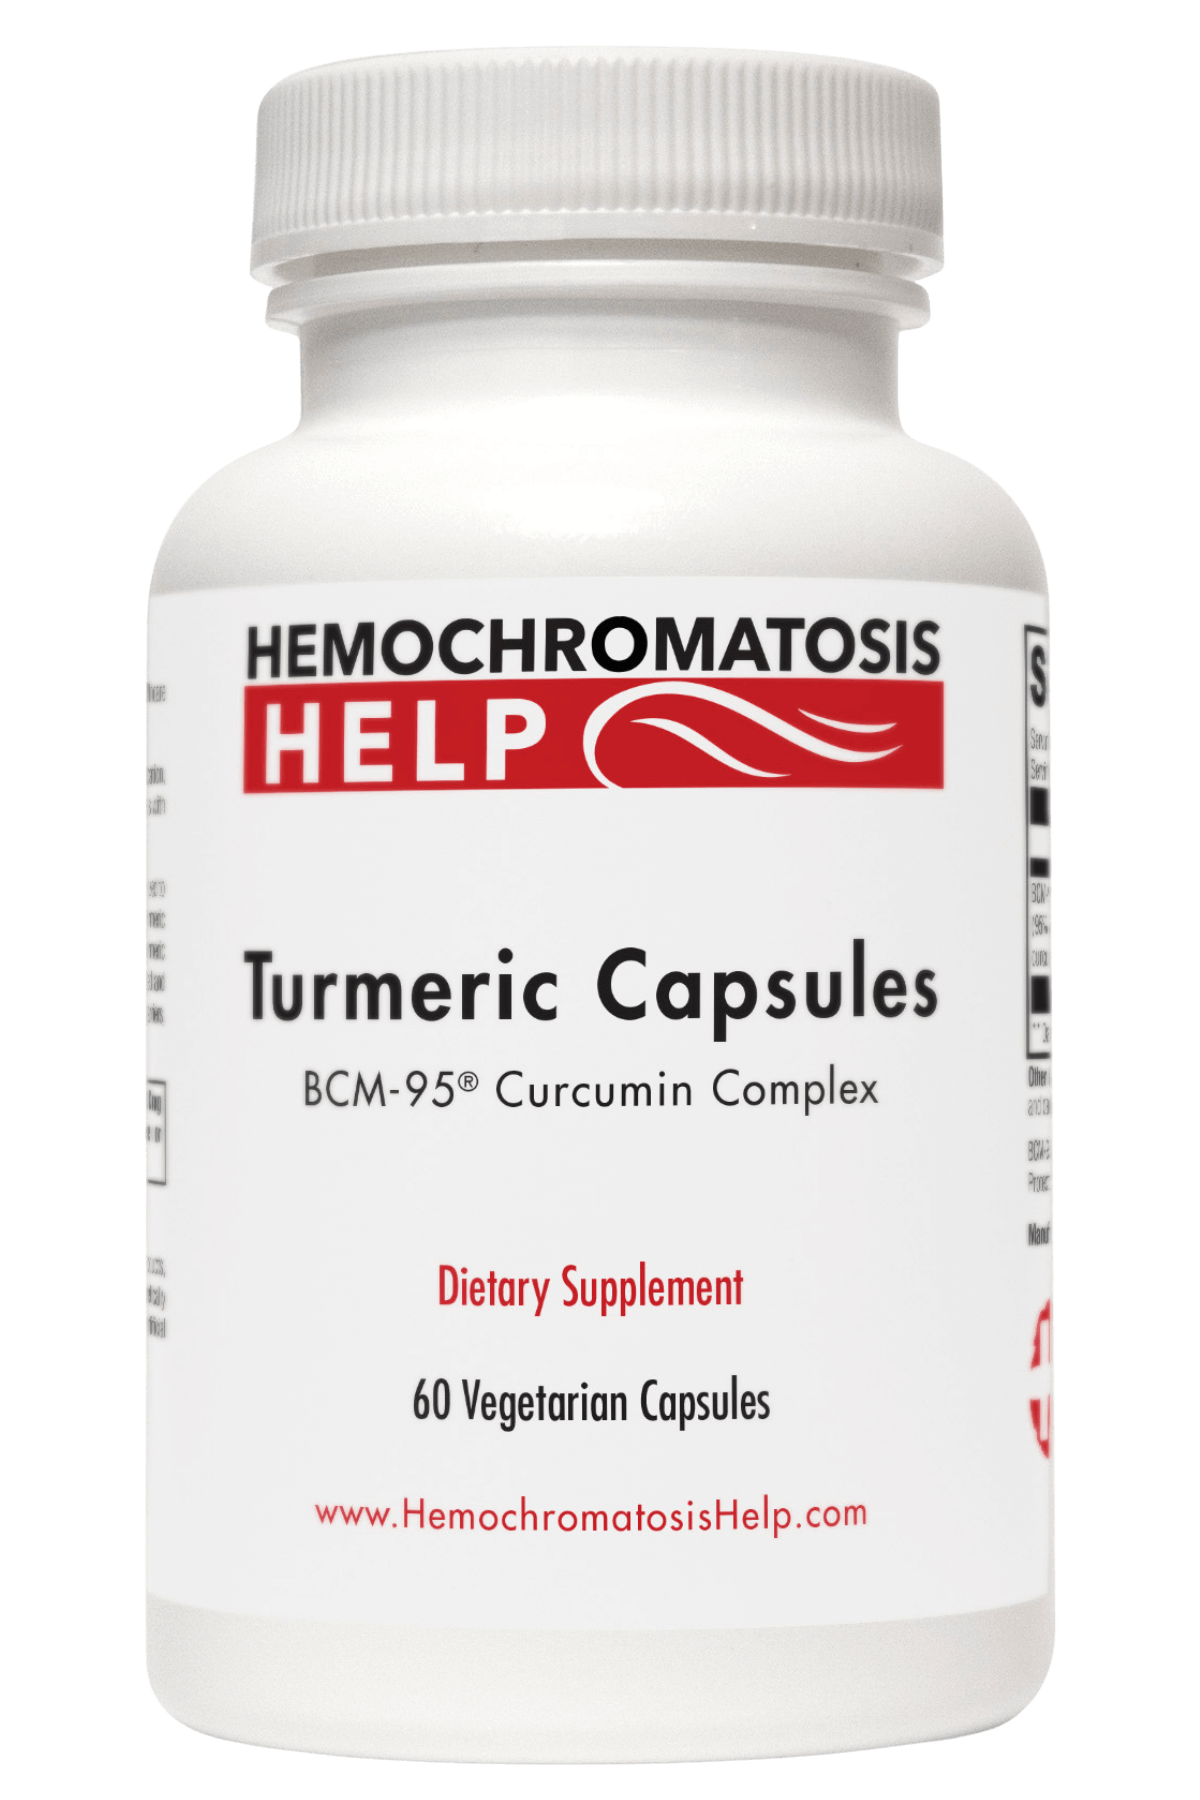 Hemochromatosis Help Turmeric Capsules bottle image